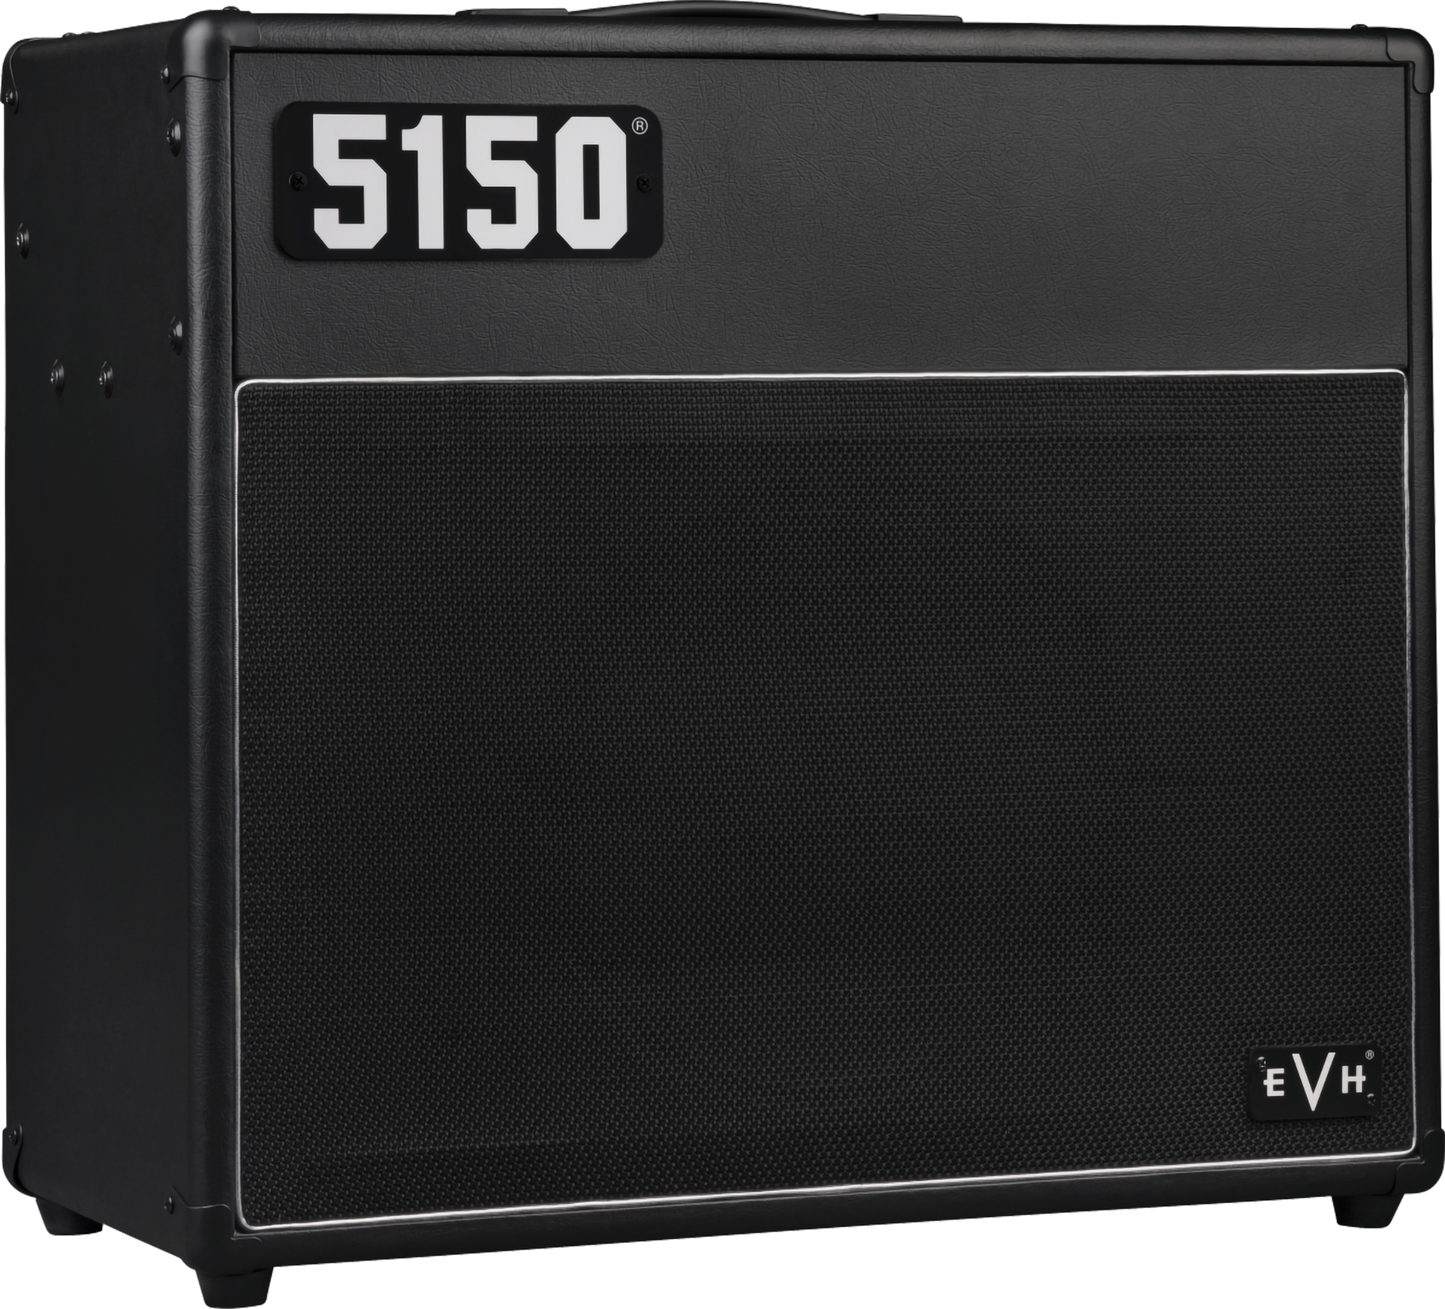 EVH 5150® Iconic Series 40 Watt 1x12” Combo Amplifier in Black